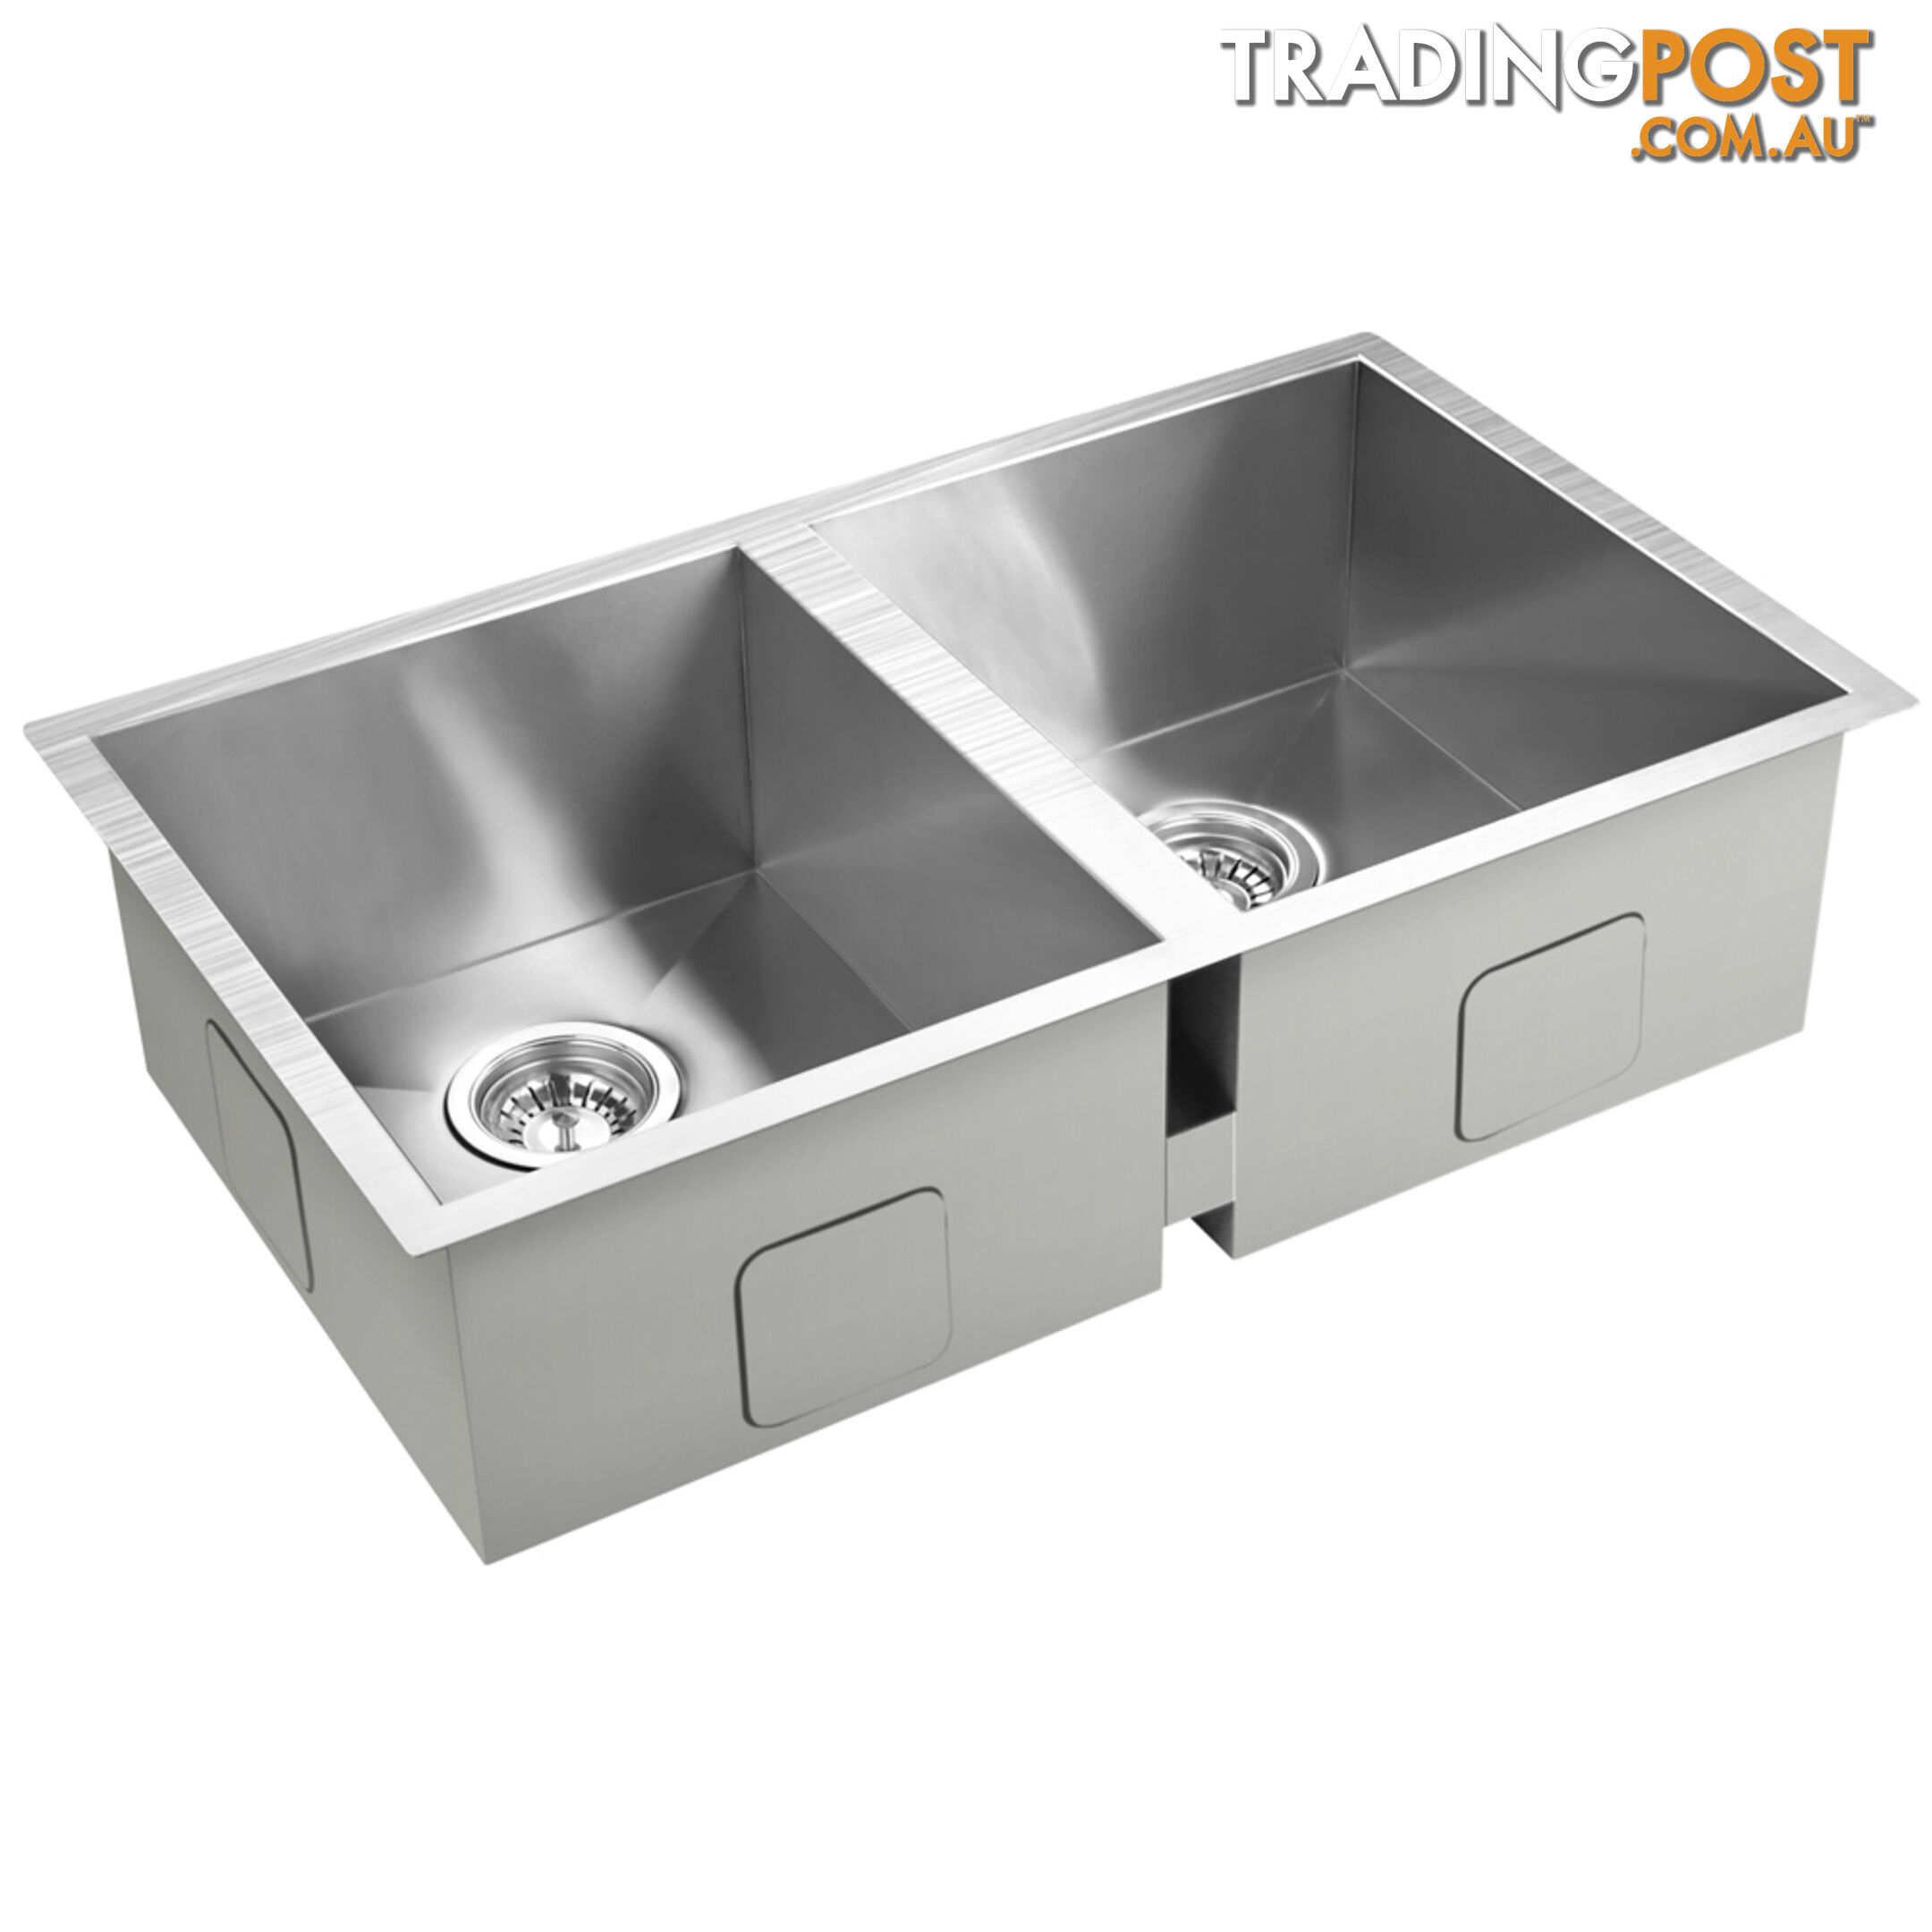 Stainless Steel Kitchen/Laundry Sink w/ Strainer Waste 770 x 450 mm